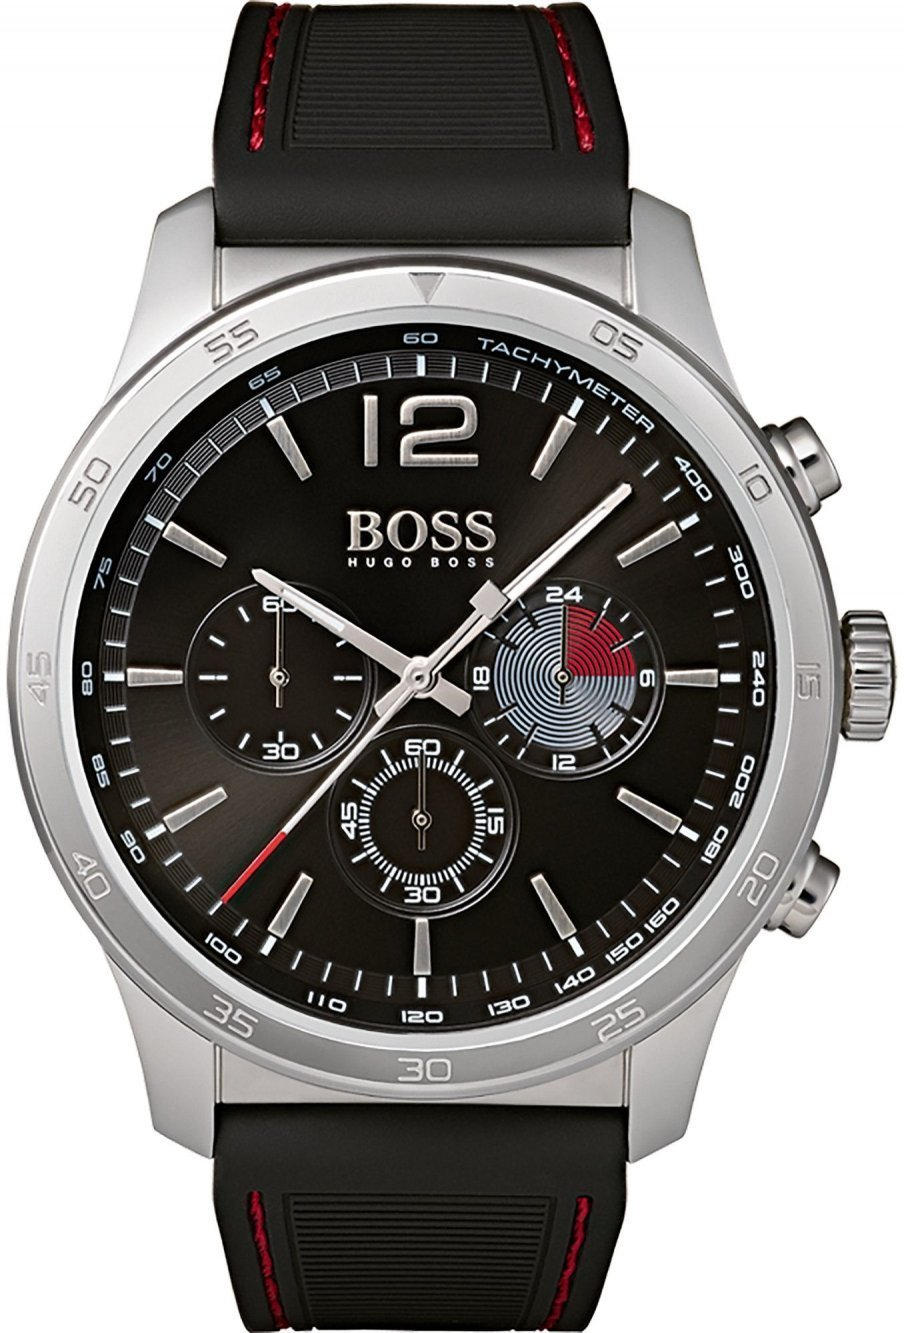 Часы хуго босс. Часы Хуго босс мужские. Часы Boss Hugo Boss мужские. Часы наручные мужские Хьюго босс. Часы Хуго босс мужские оригинал.